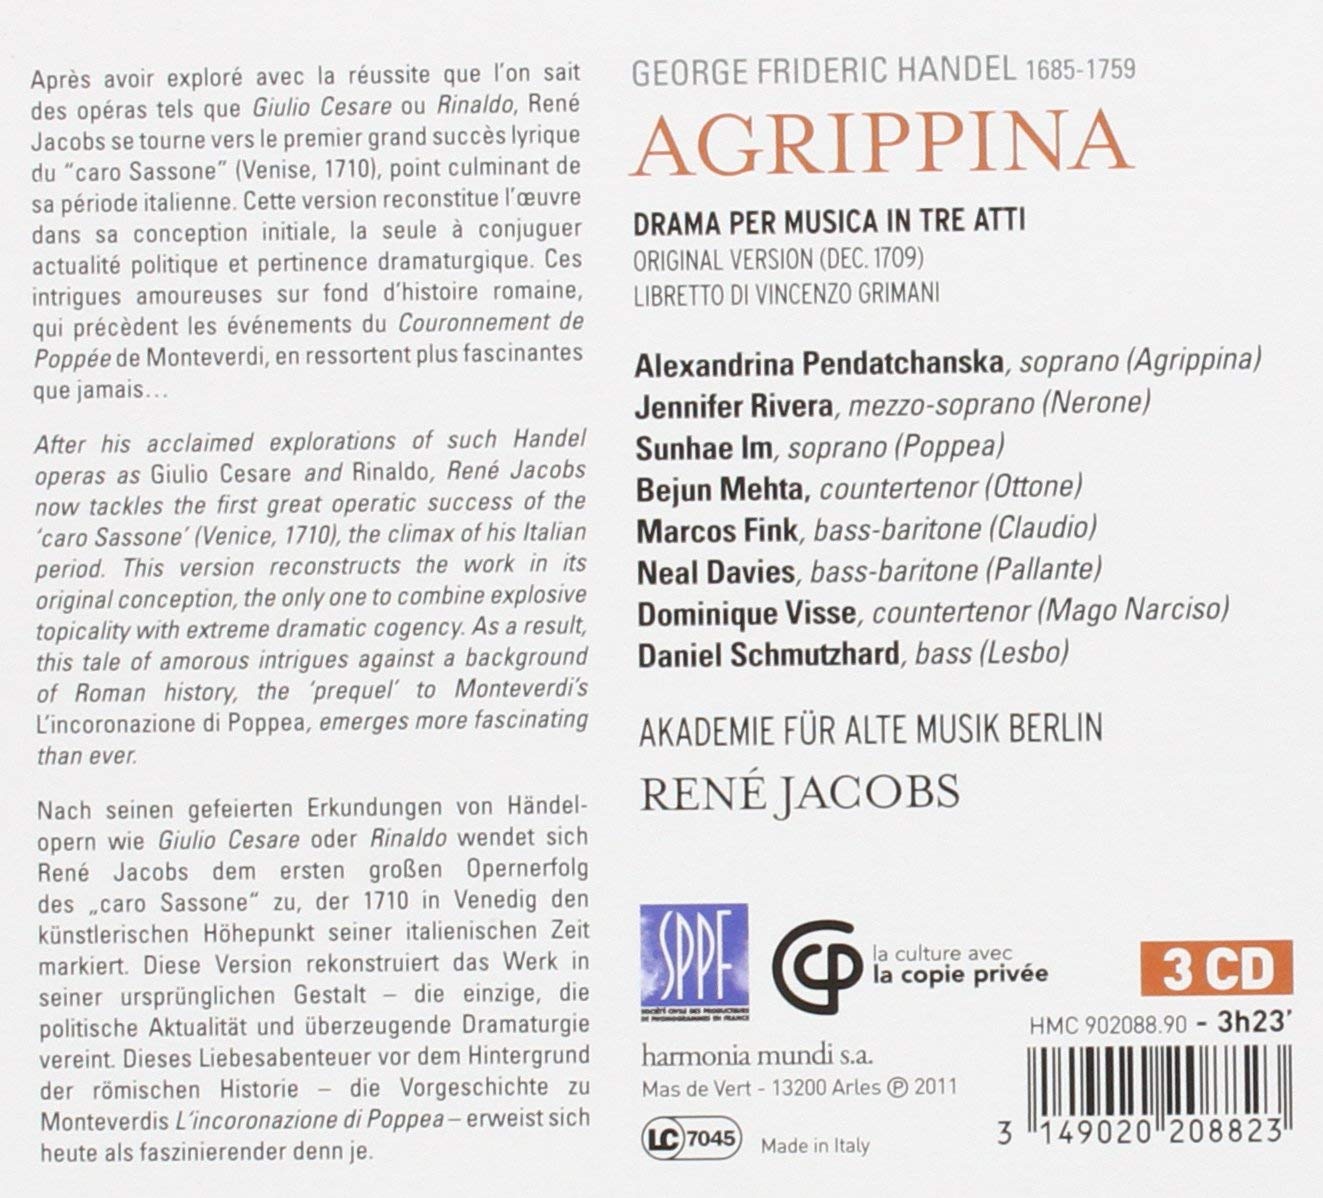 Handel: Agrippina, Drama per musica in tre atti - slide-1